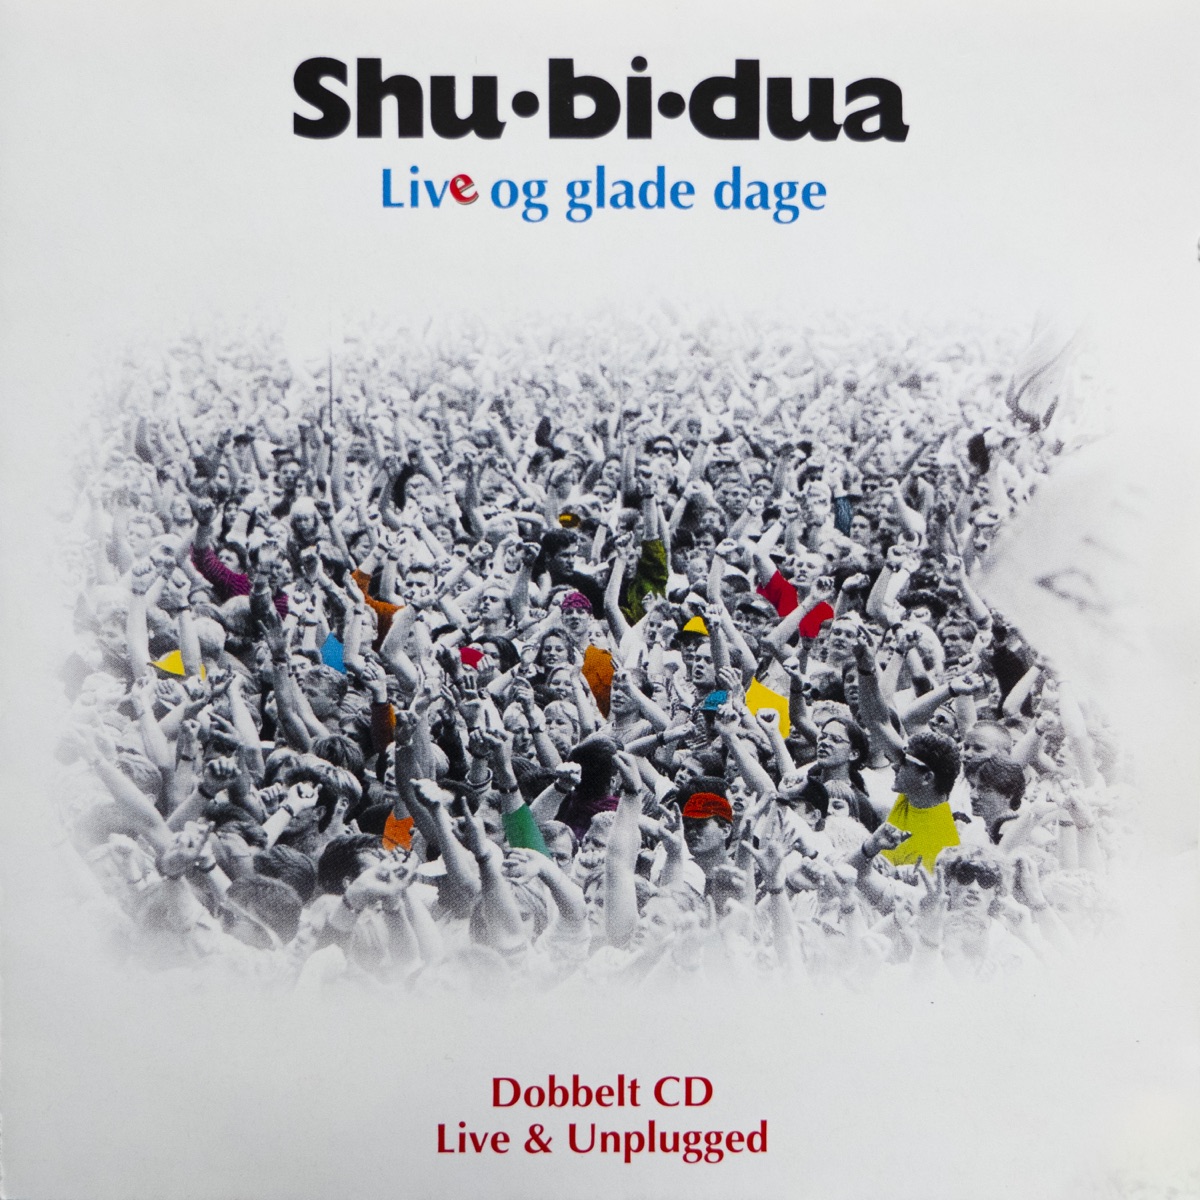 Shu-bi-dua 200 - Album by Shu-bi-dua - Apple Music